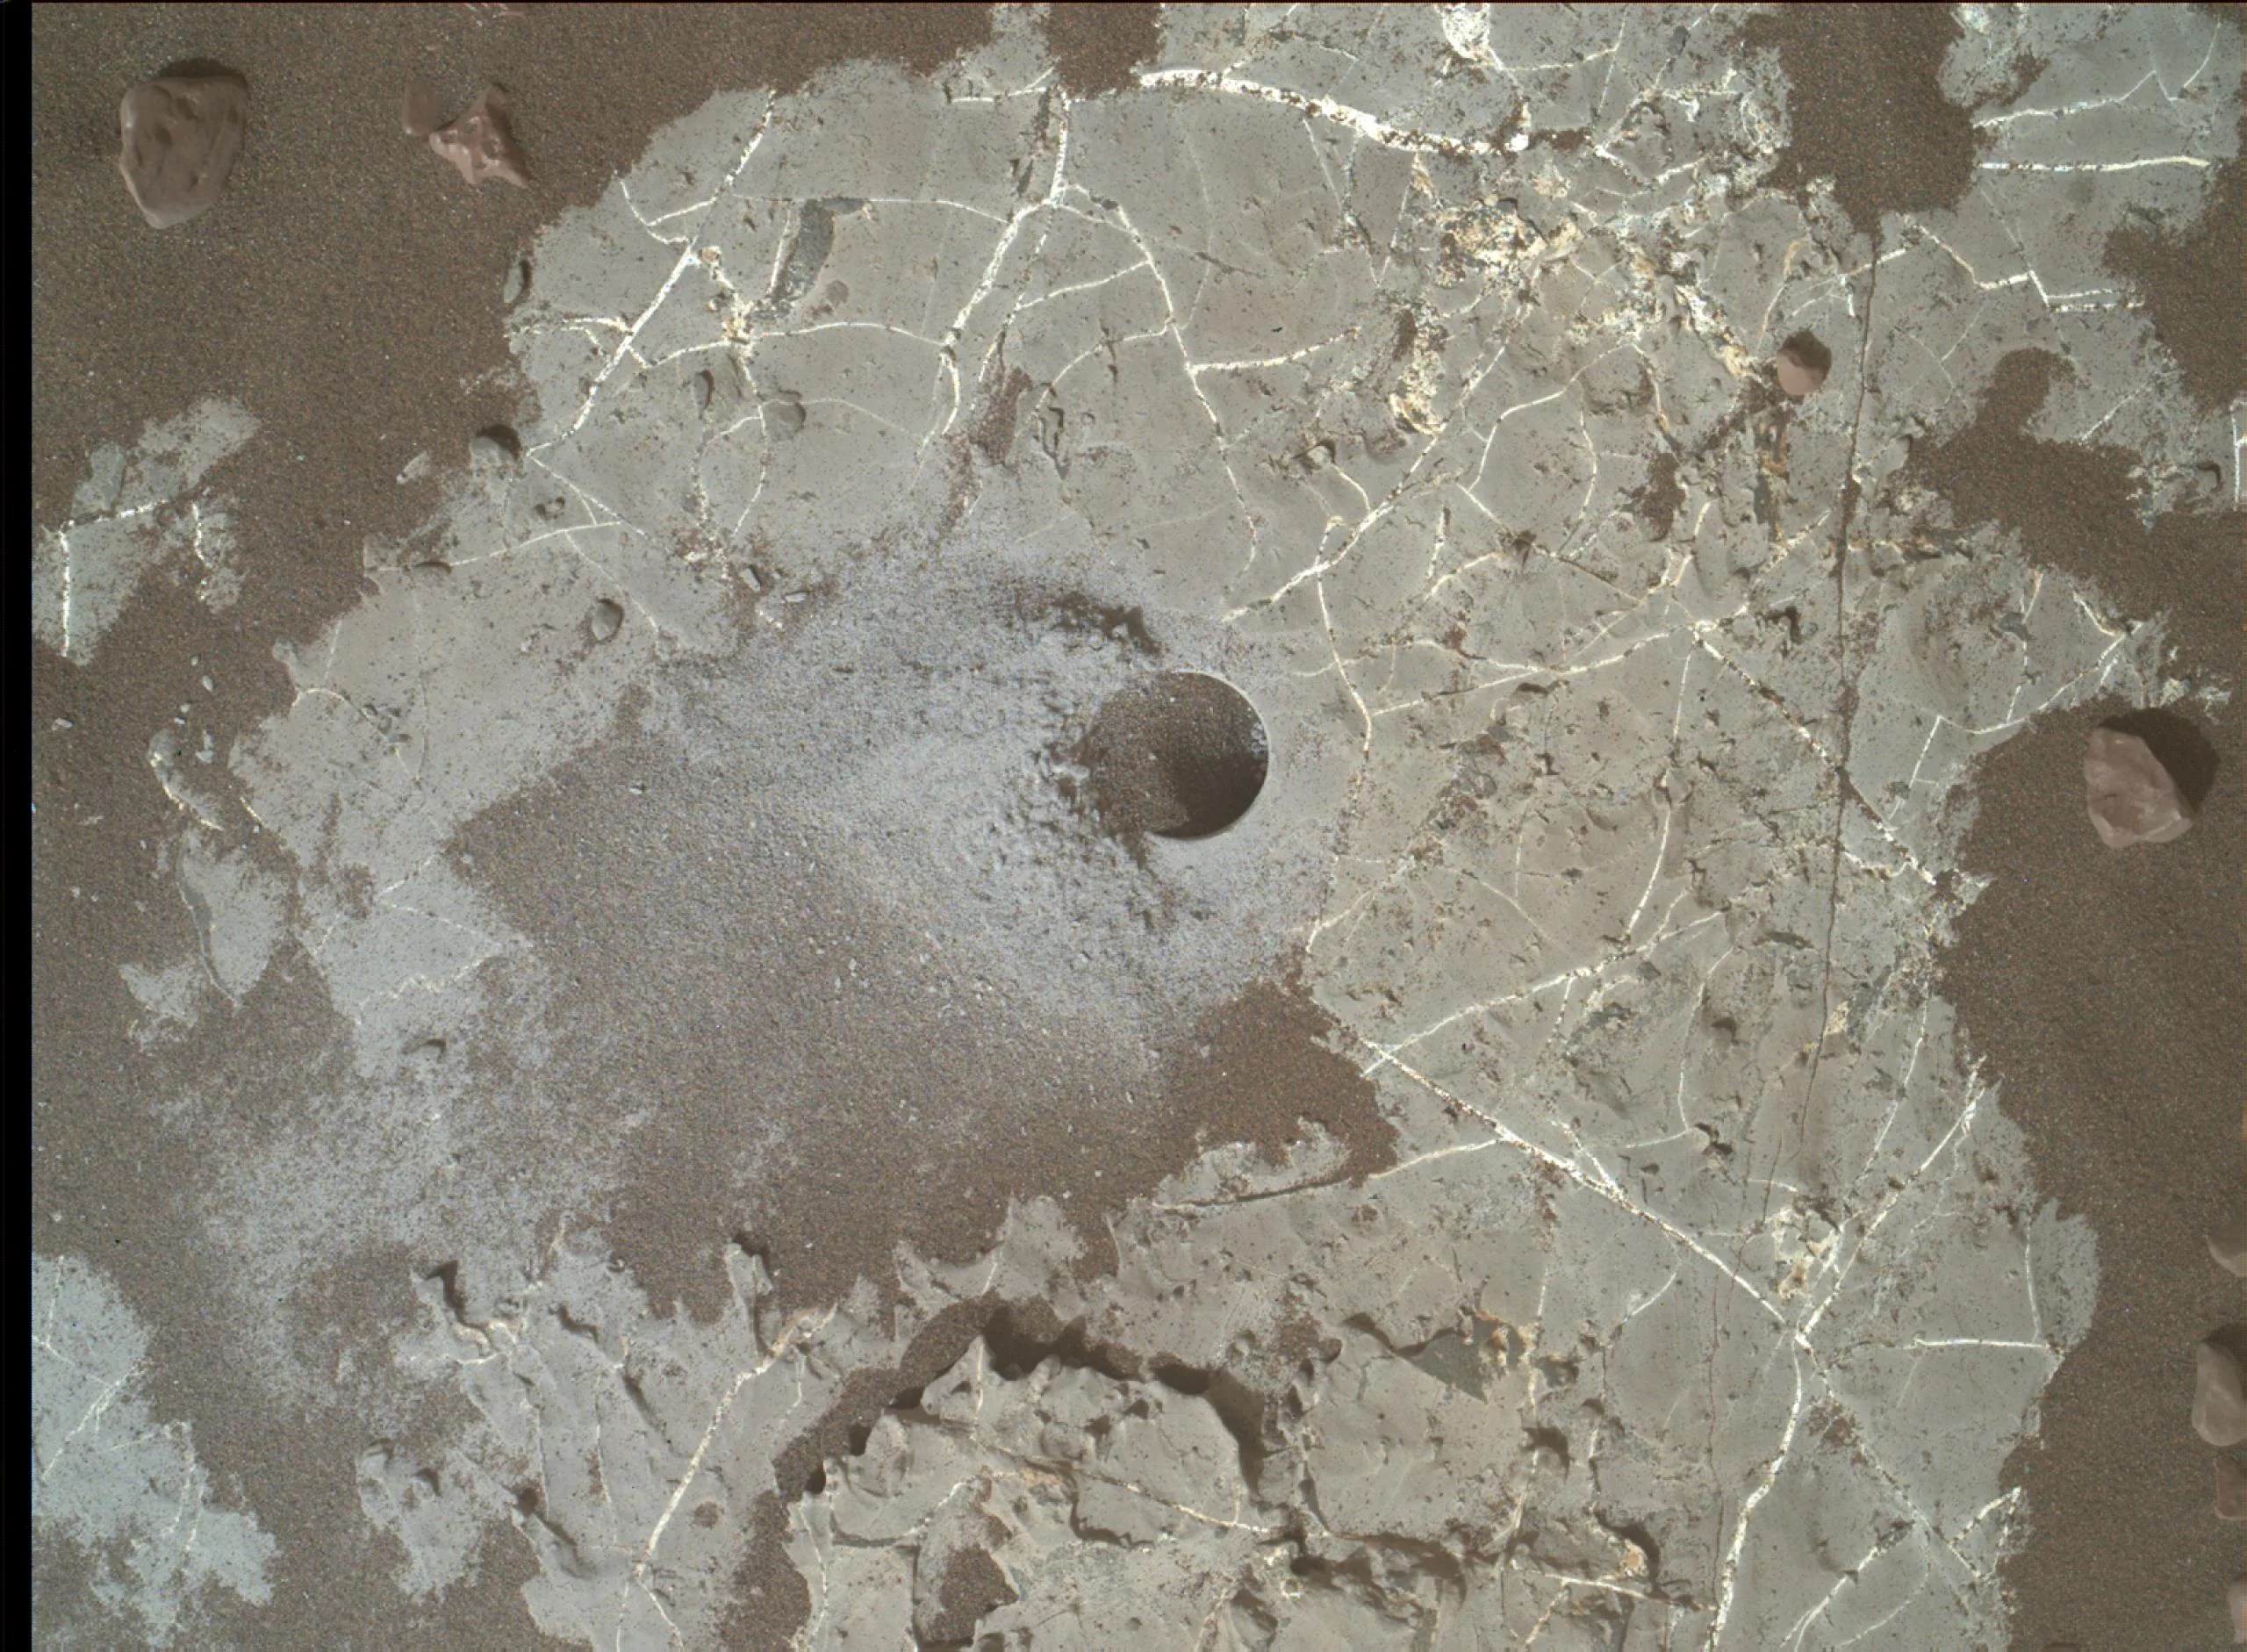 sta imagen muestra el orificio de la perforación Highfield realizada por el rover Curiosity de la NASA mientras recolectaba una muestra en Vera Rubin Ridge, en el cráter Gale en Marte. El polvo de este agujero estaba enriquecido con carbono 12. La imagen fue tomada por el Mars Hand Lens Imager, el día 2247 marciano, o sol, de la misión. Créditos: NASA/Caltech-JPL/MSSS.